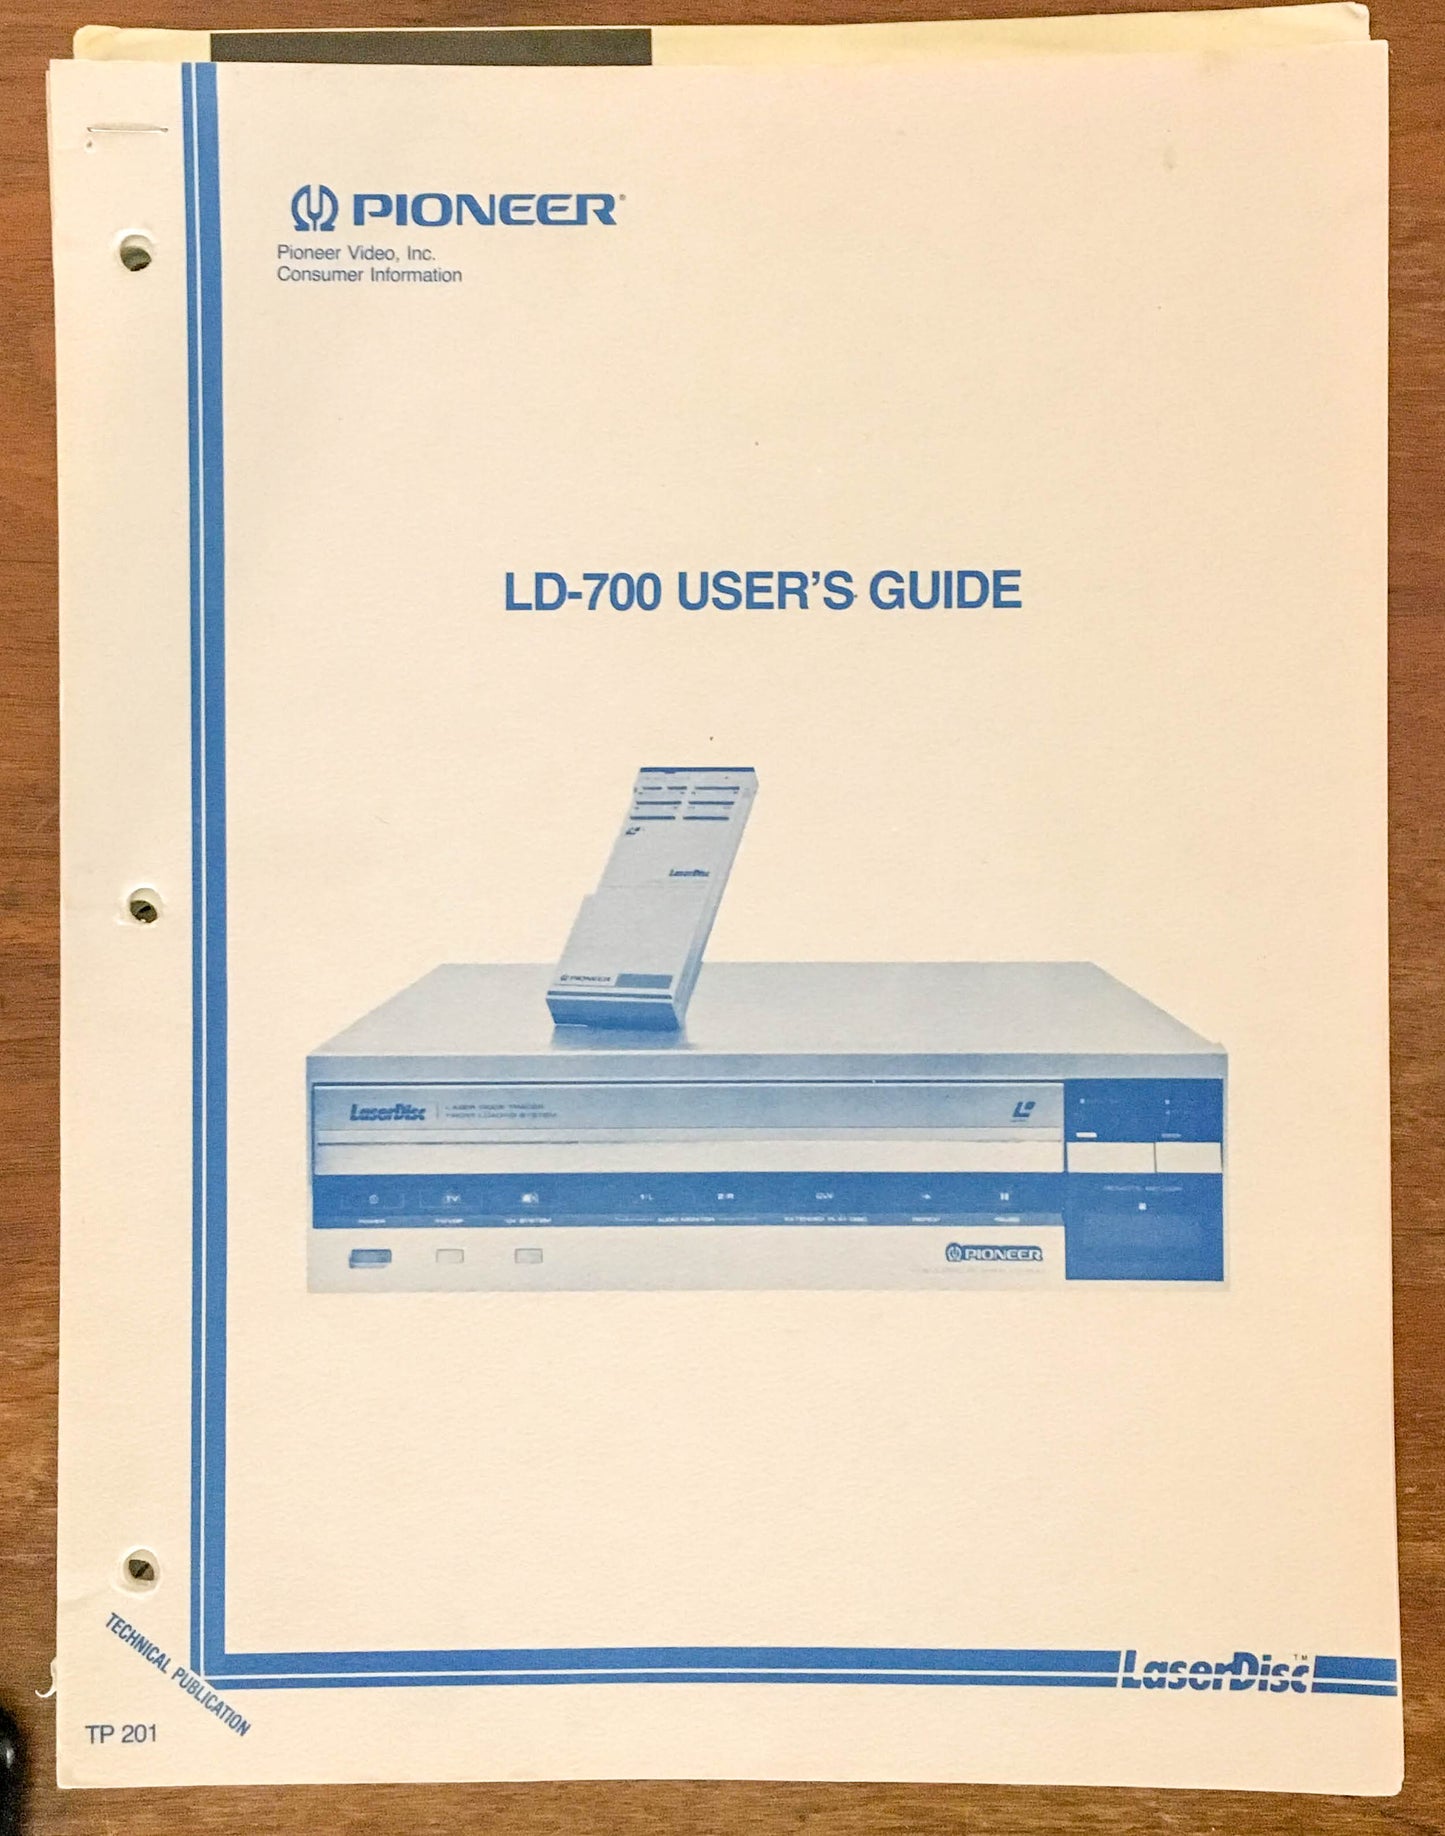 Pioneer LD-700 LD Laserdisc  User Guide Owners Manual *Original*